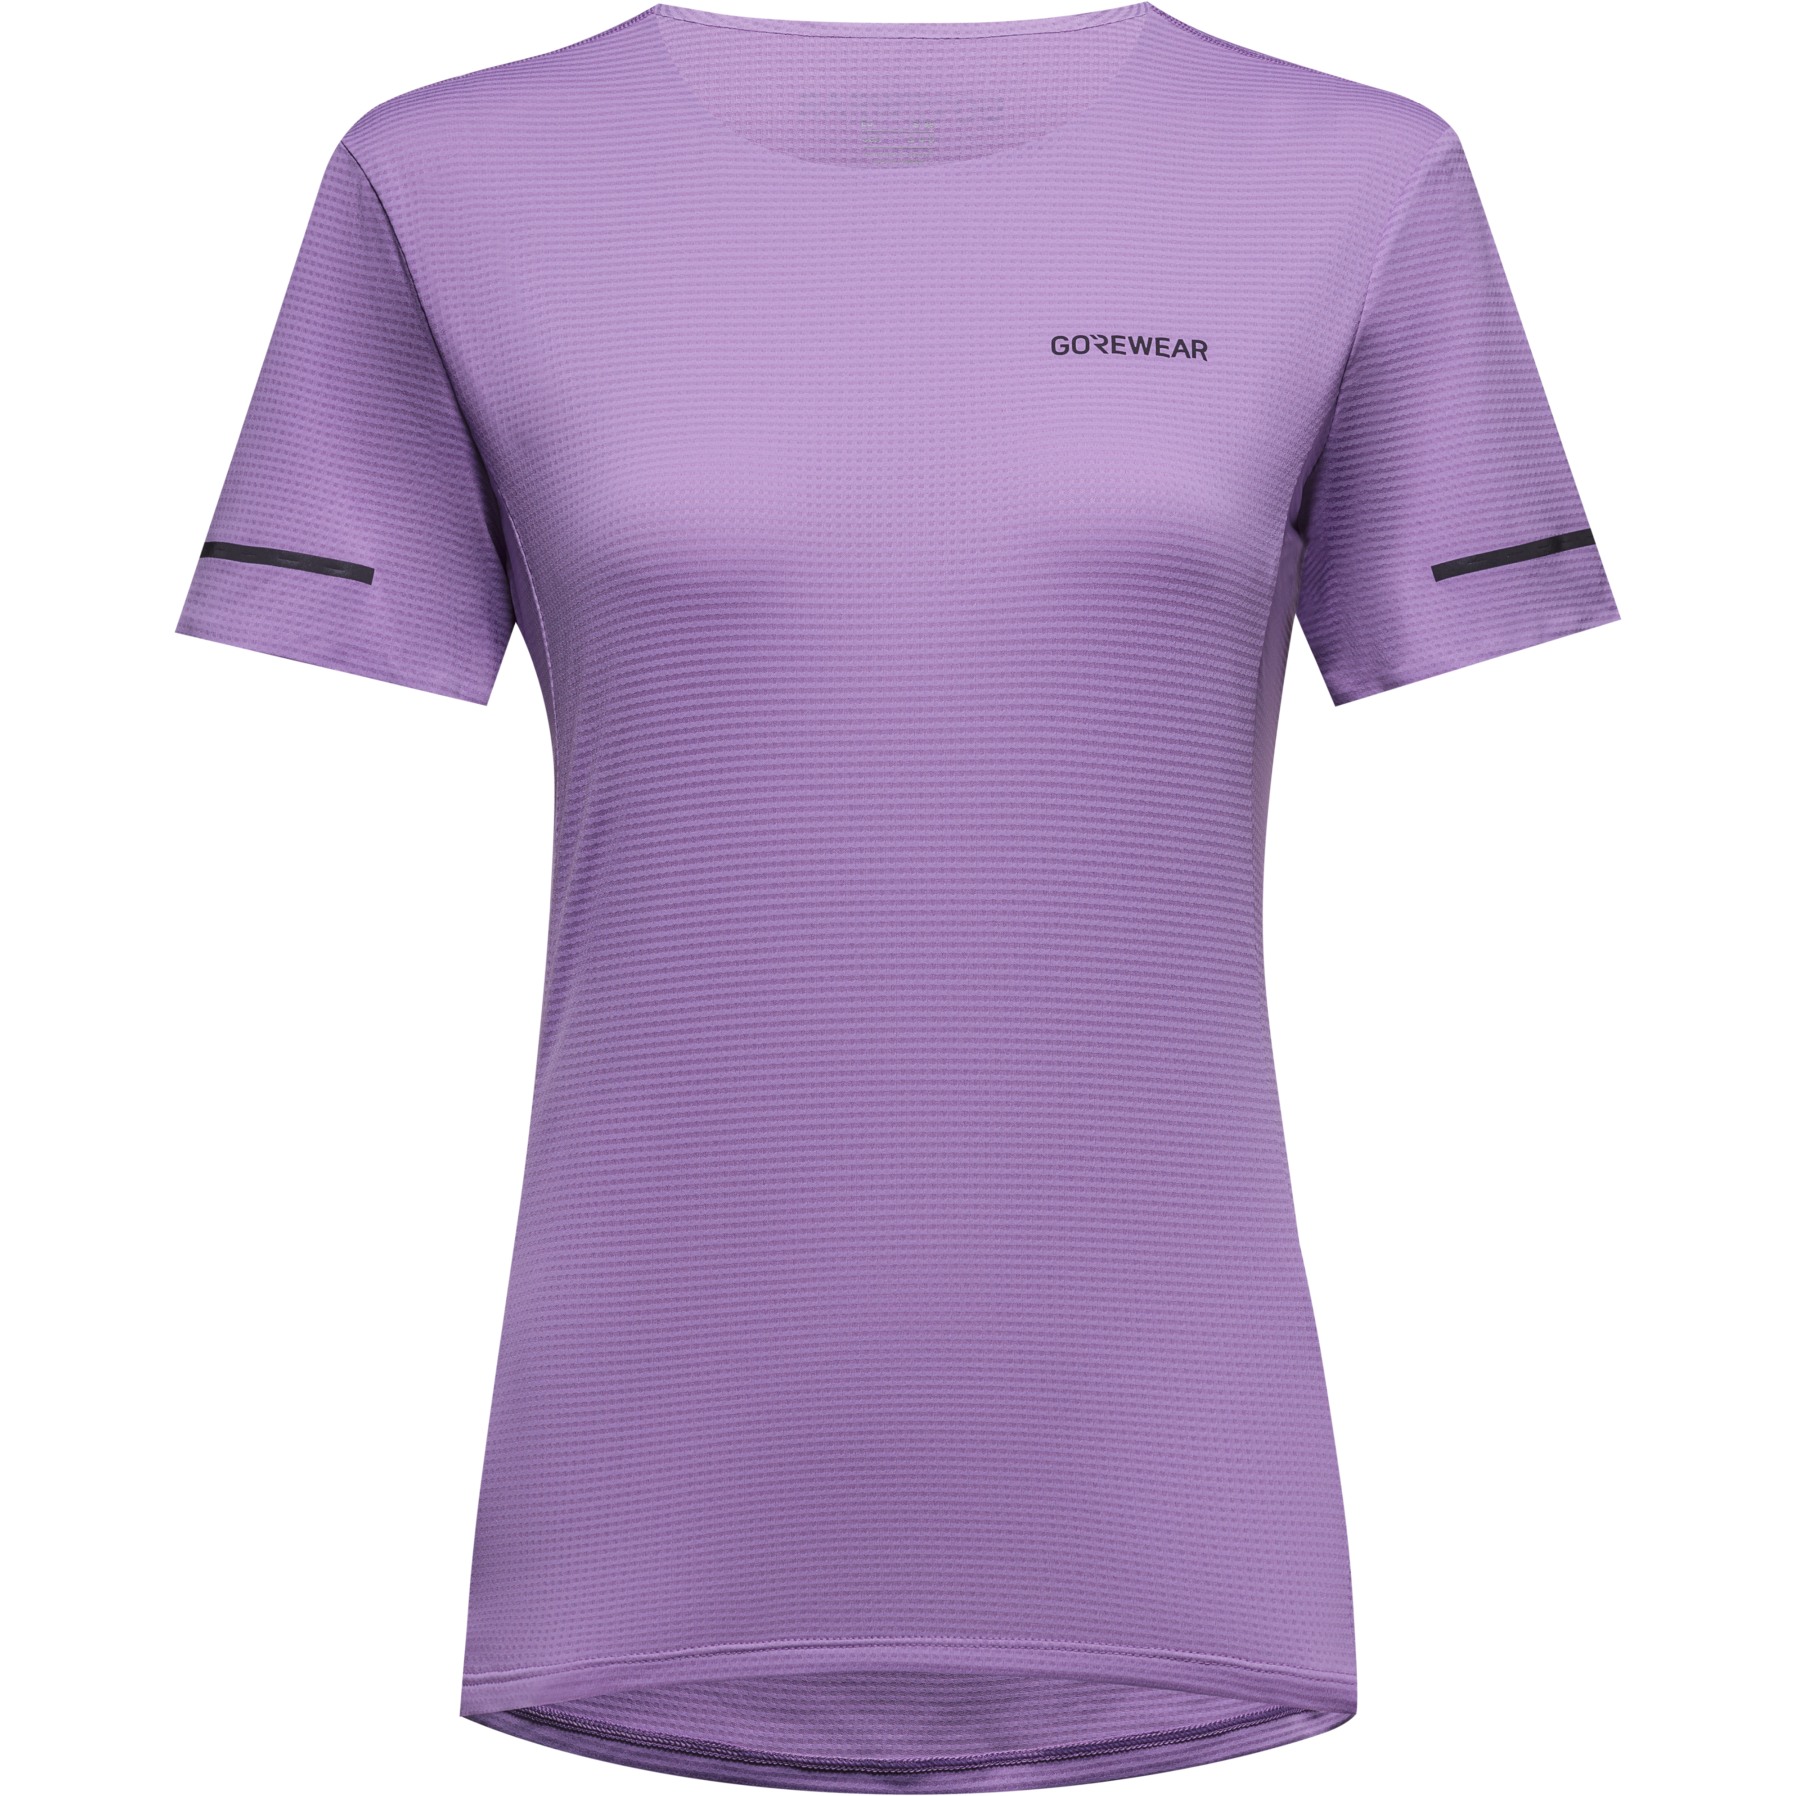 Produktbild von GOREWEAR Contest 2.0 T-Shirt Damen - scrub purple BX00